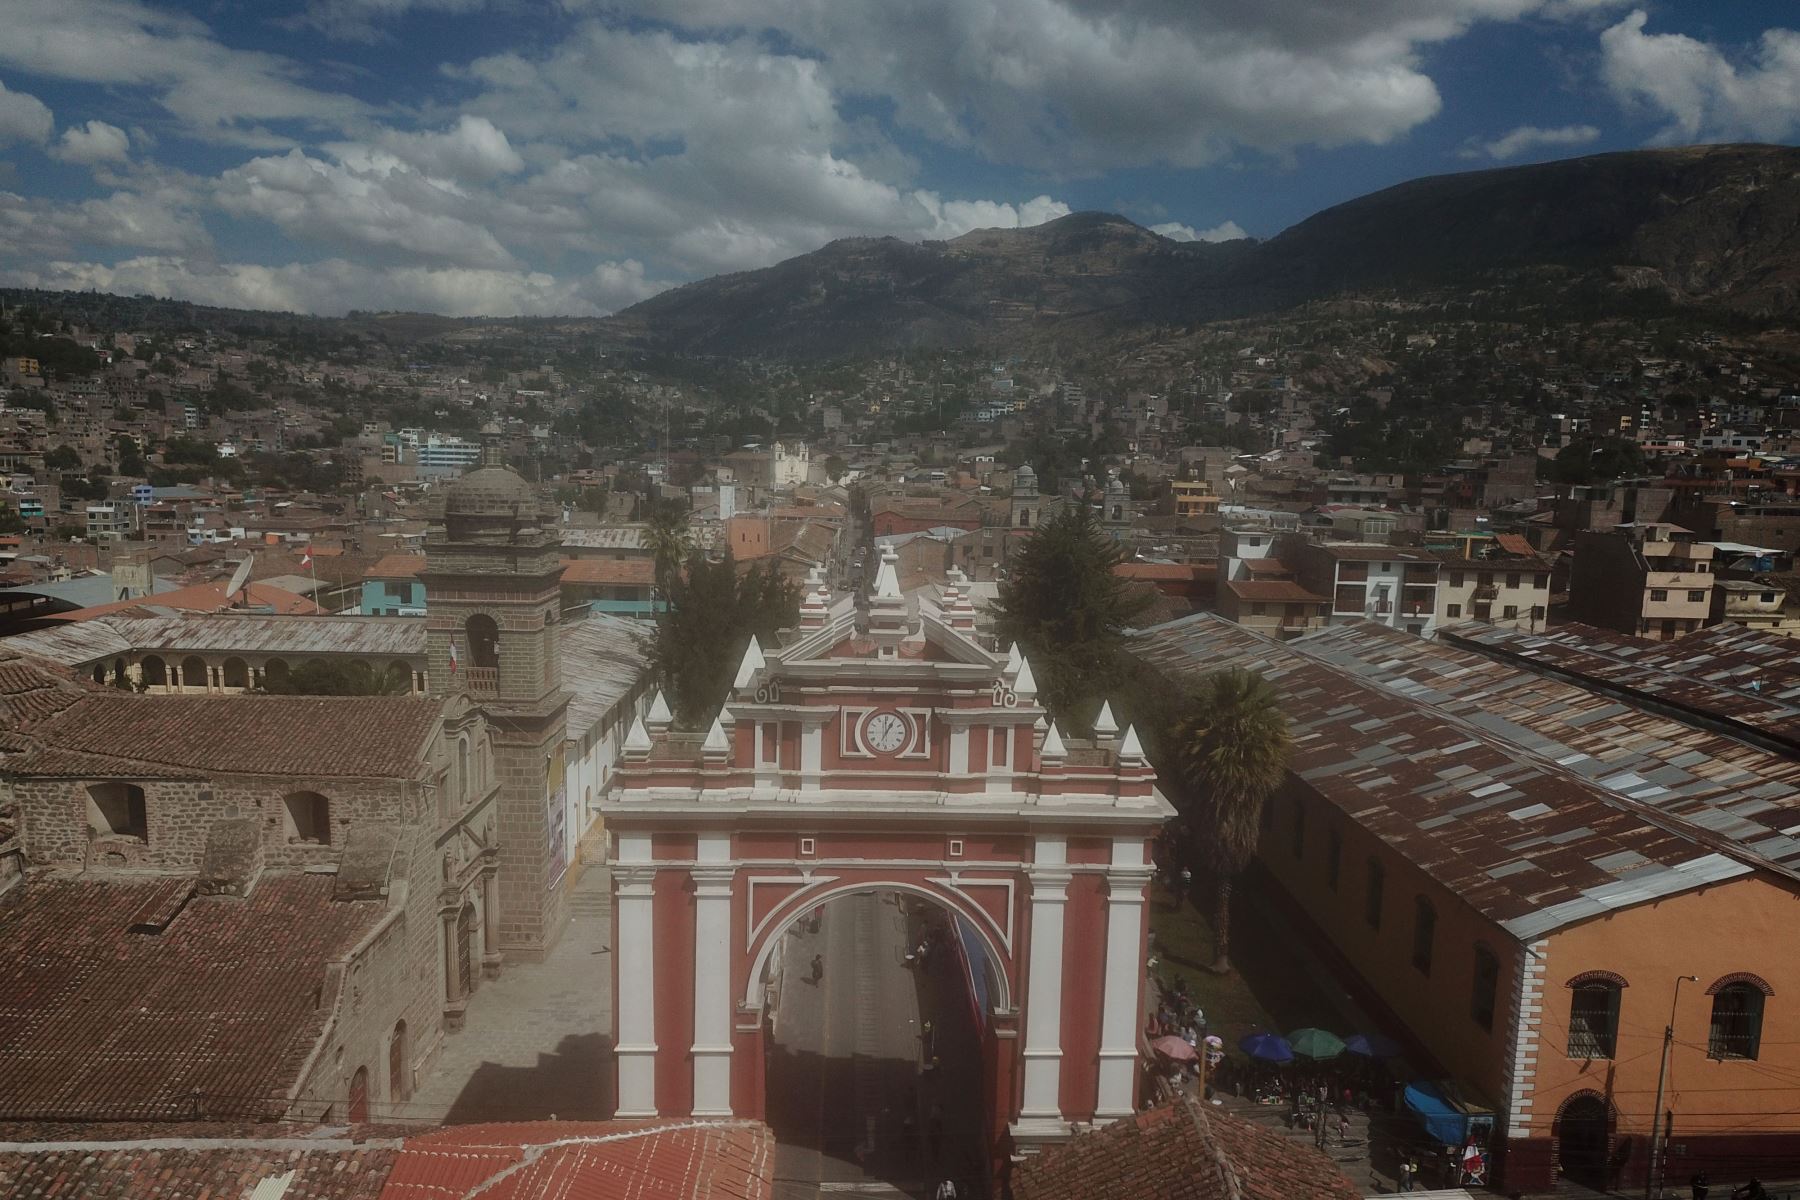 Imágenes de la Plaza de Armas de Huamanga , Ayacucho, donde llegará el  presidente Pedro Castillo para participar de acto simbólico de juramentación.
Foto: ANDINA/ Juan Carlos Guzmán